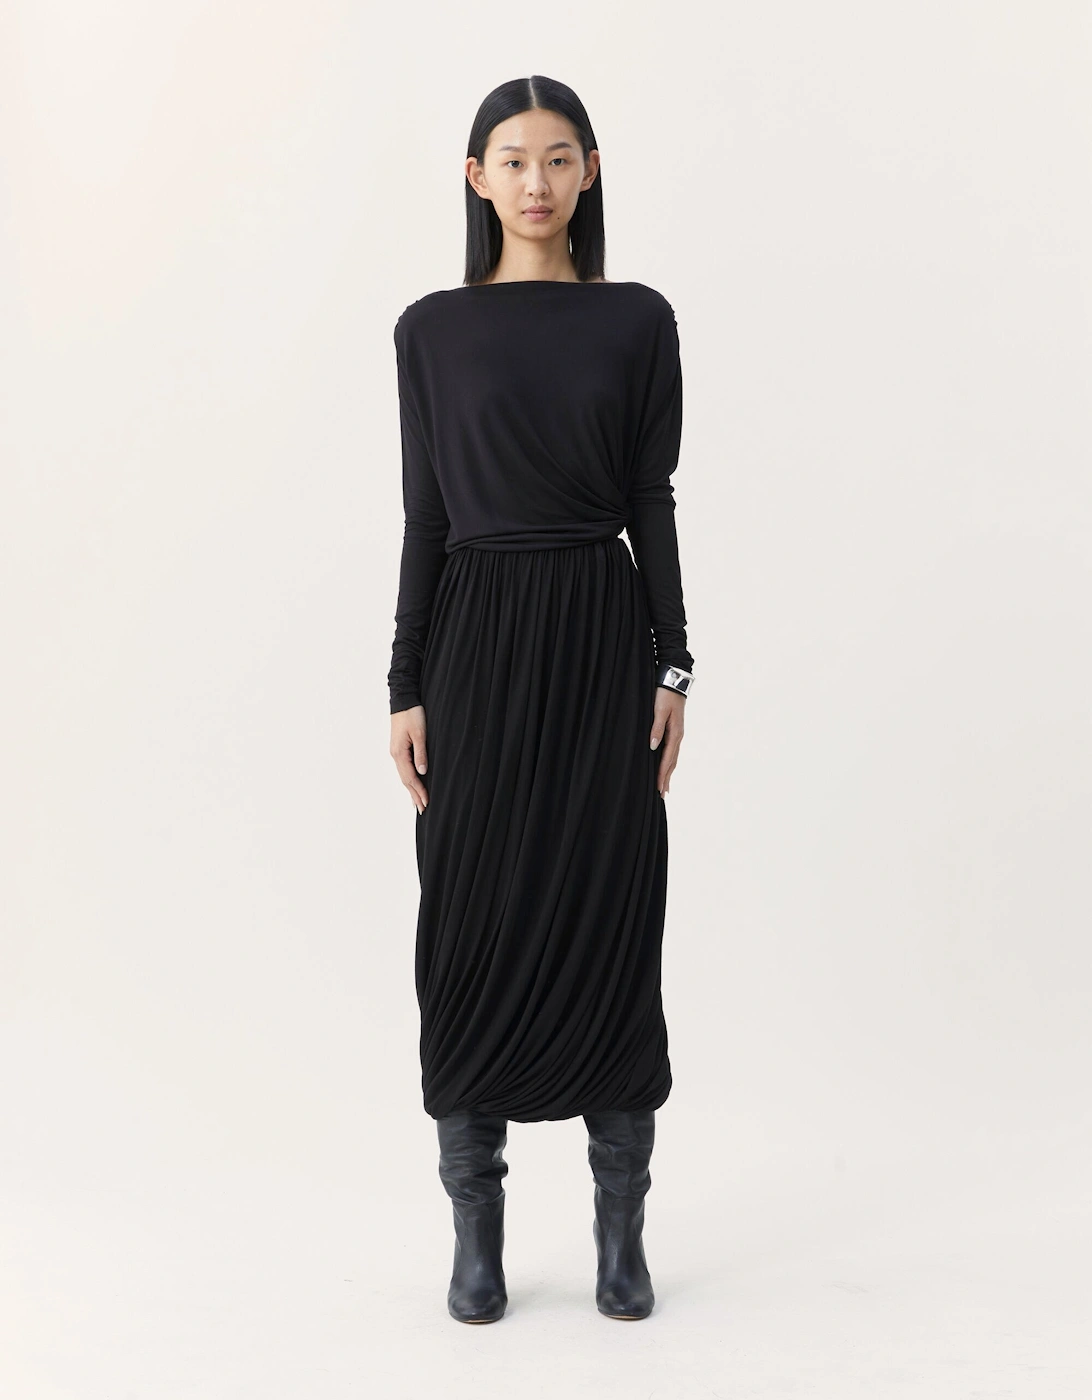 Caladan Skirt in Black, 6 of 5